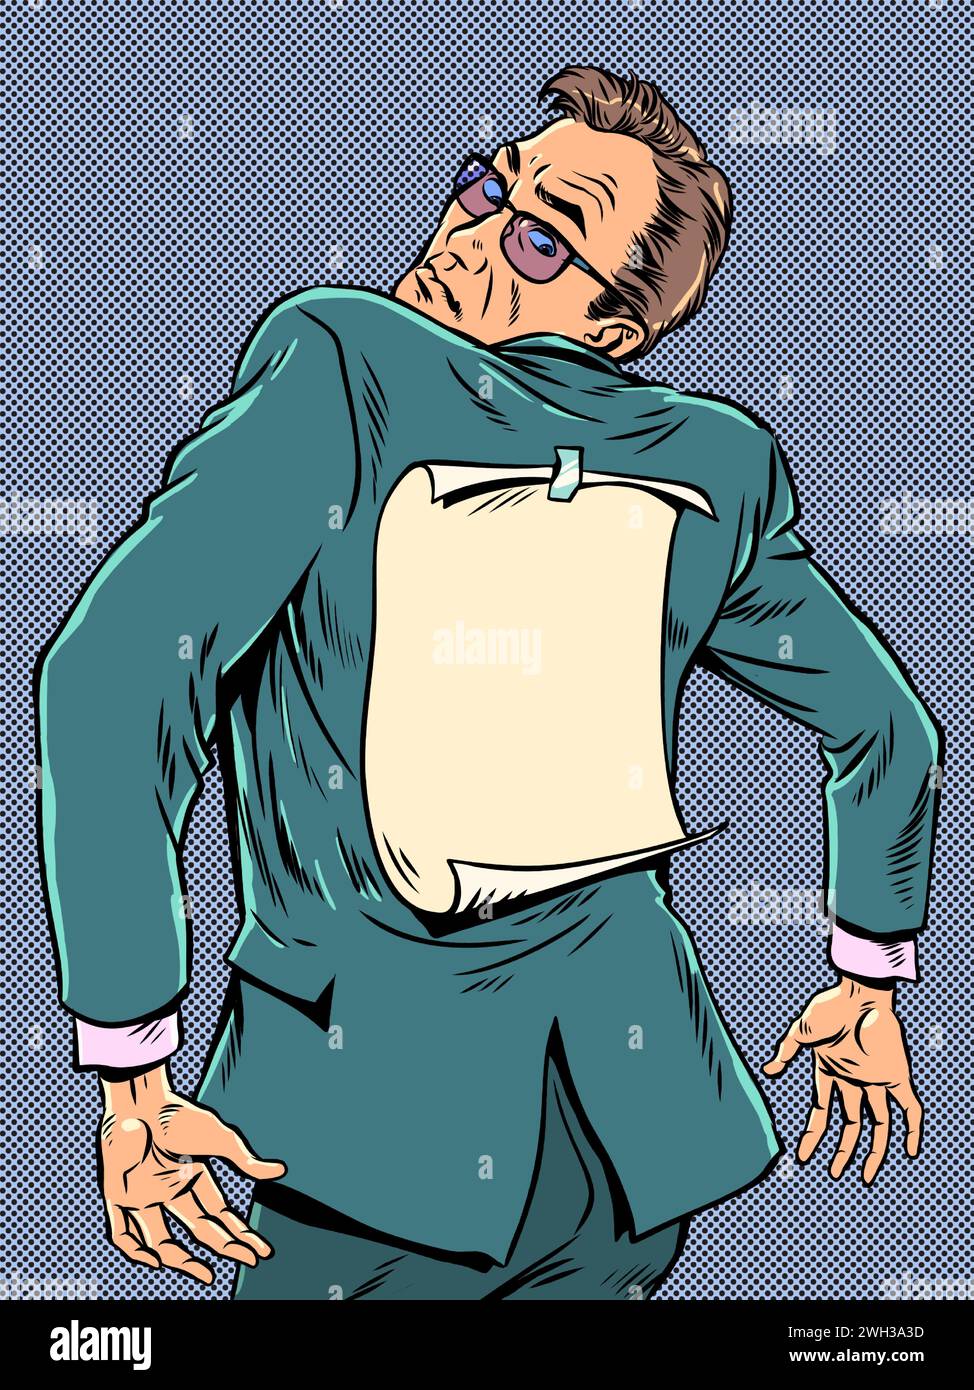 Ein von der Gesellschaft stigmatisierter Mitarbeiter. Ein Mann im Anzug schaut auf den Rücken, wo das Papier befestigt ist. Einander beschriften. Pop Art Retro Vektor Il Stock Vektor